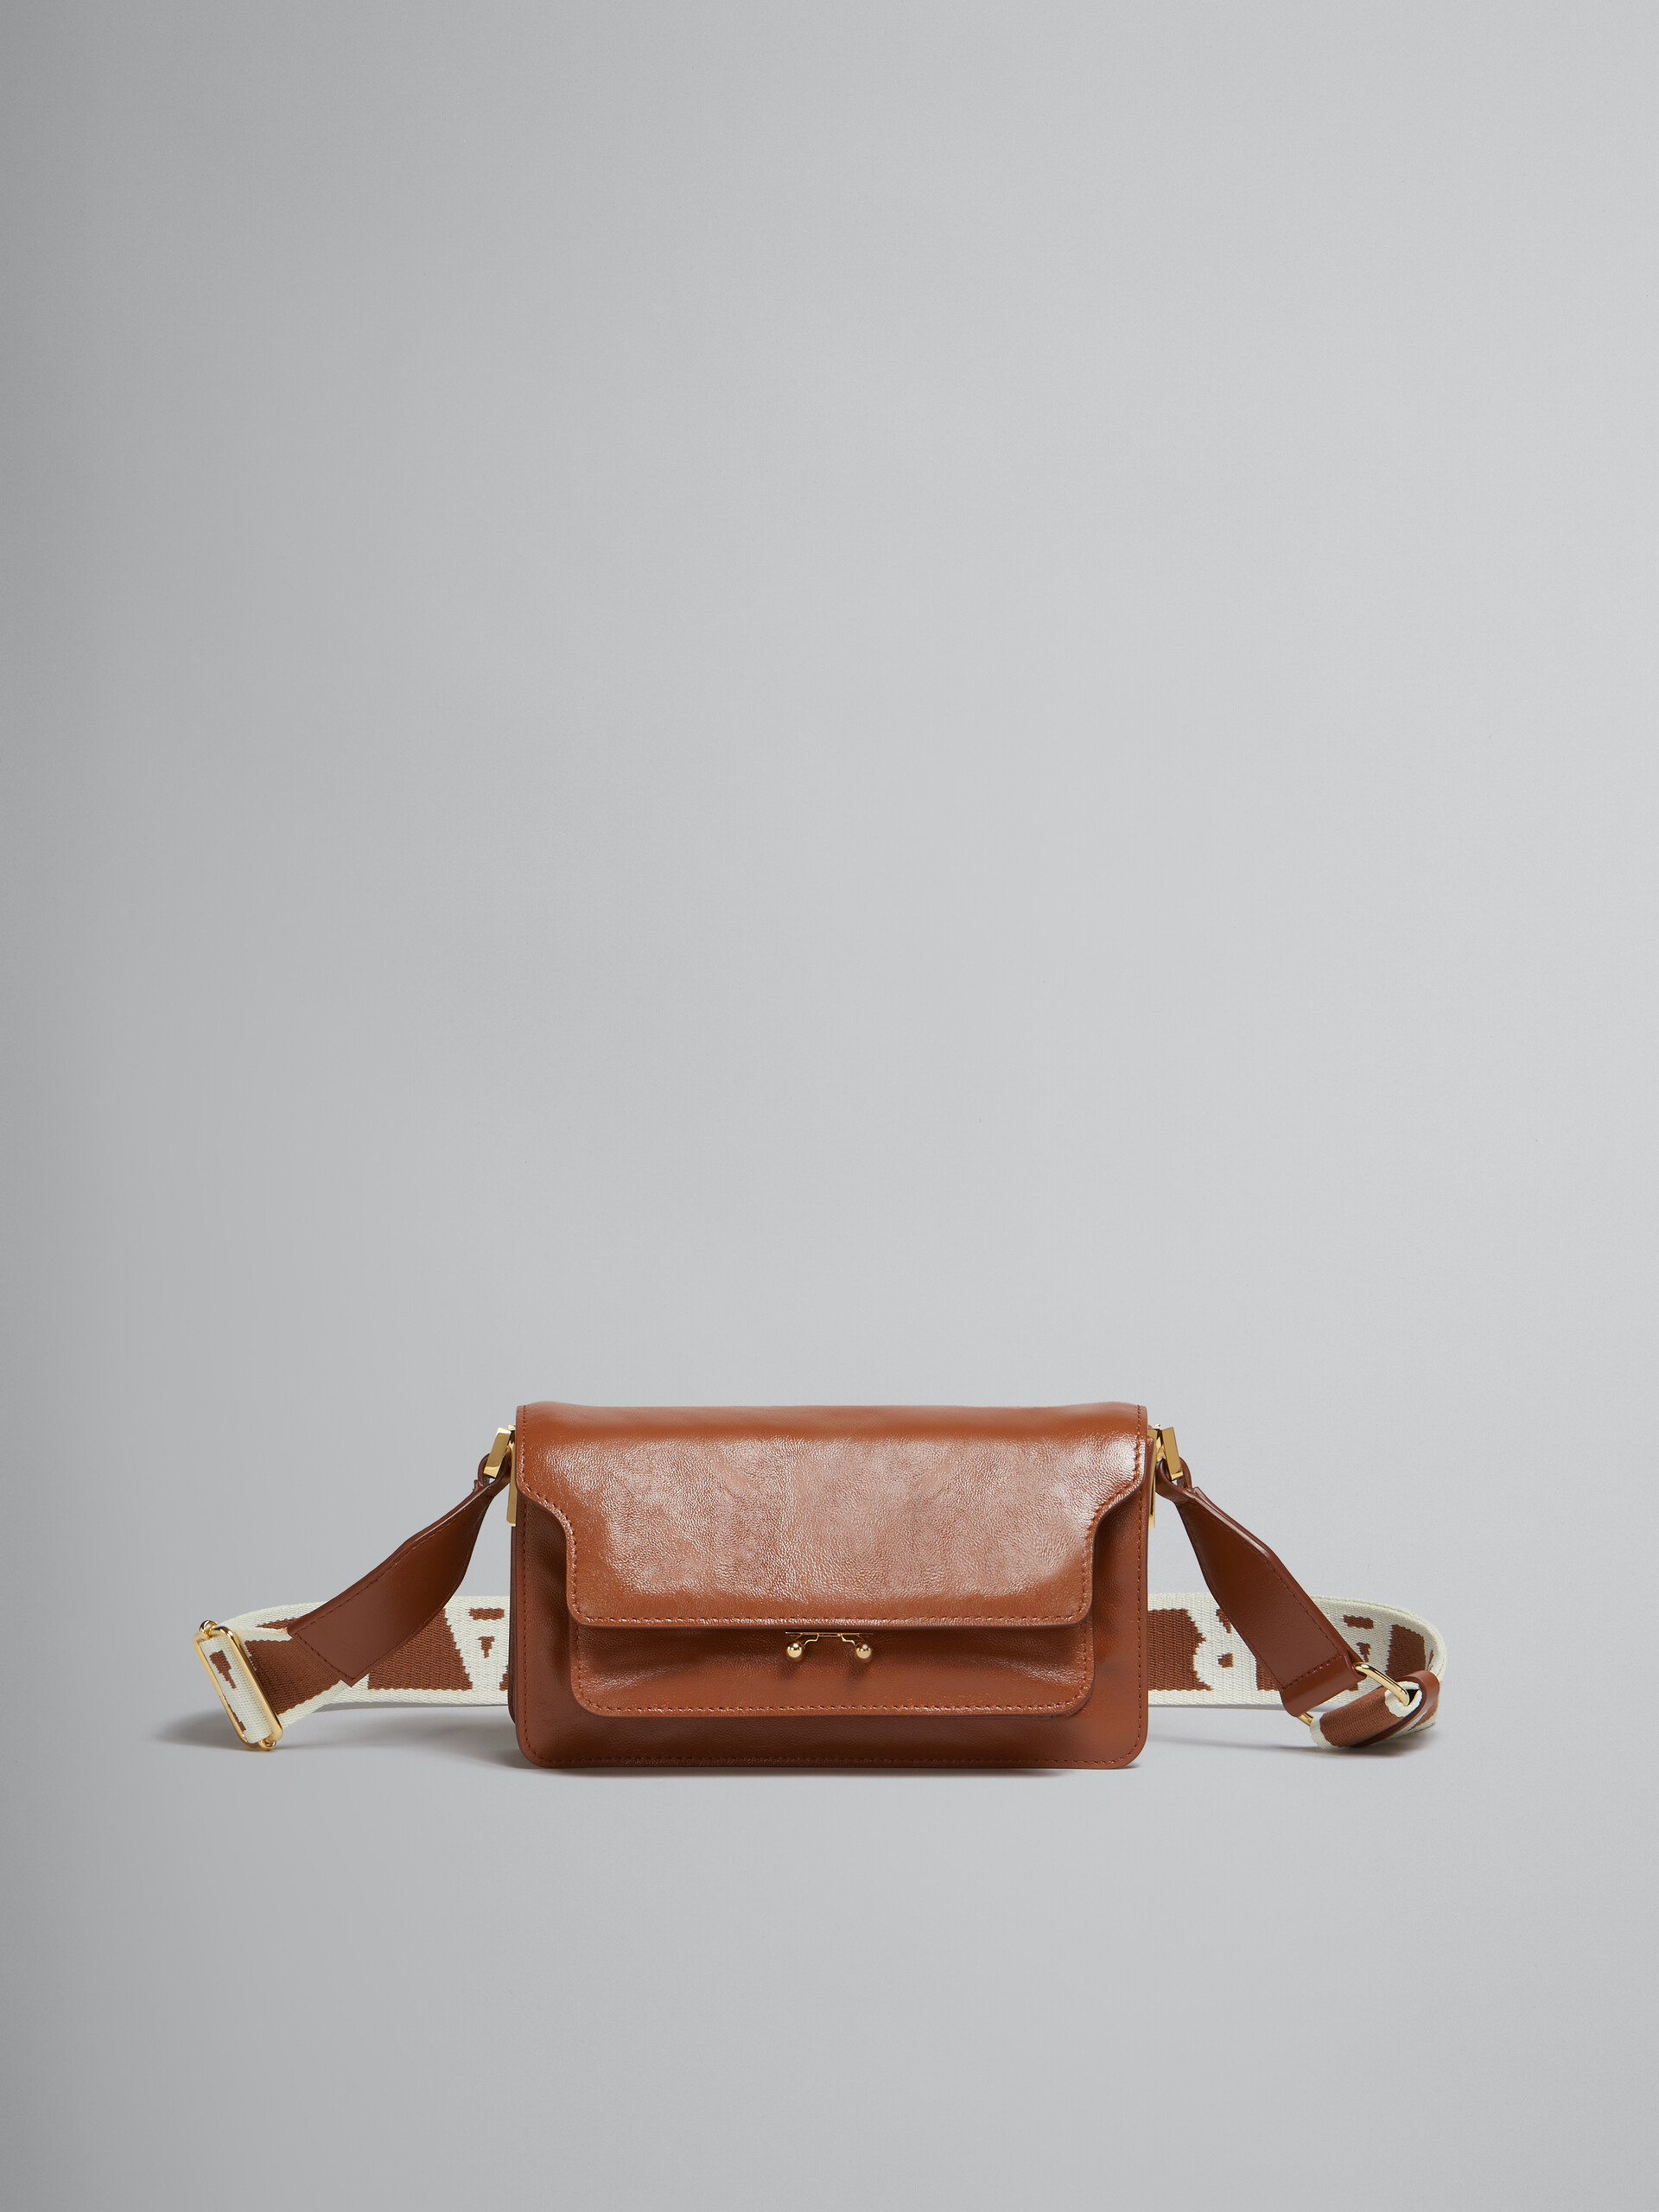 Trunk Soft Bag E/W in pelle marrone con tracolla logata - Borse a spalla - Image 1